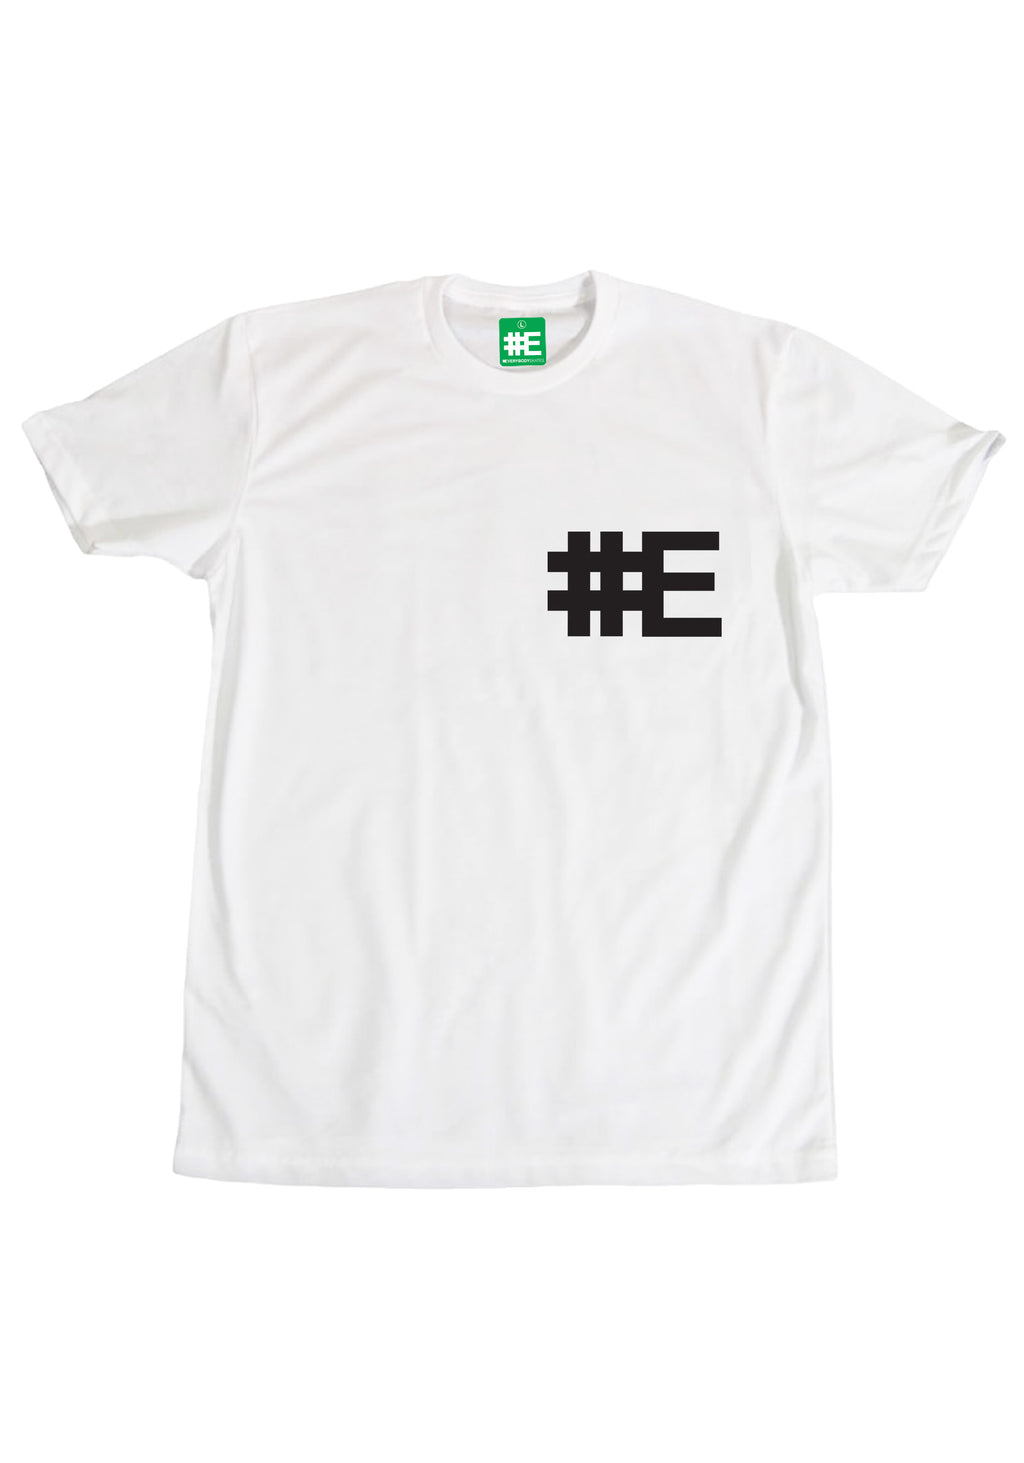 #E Brandmark T-shirt